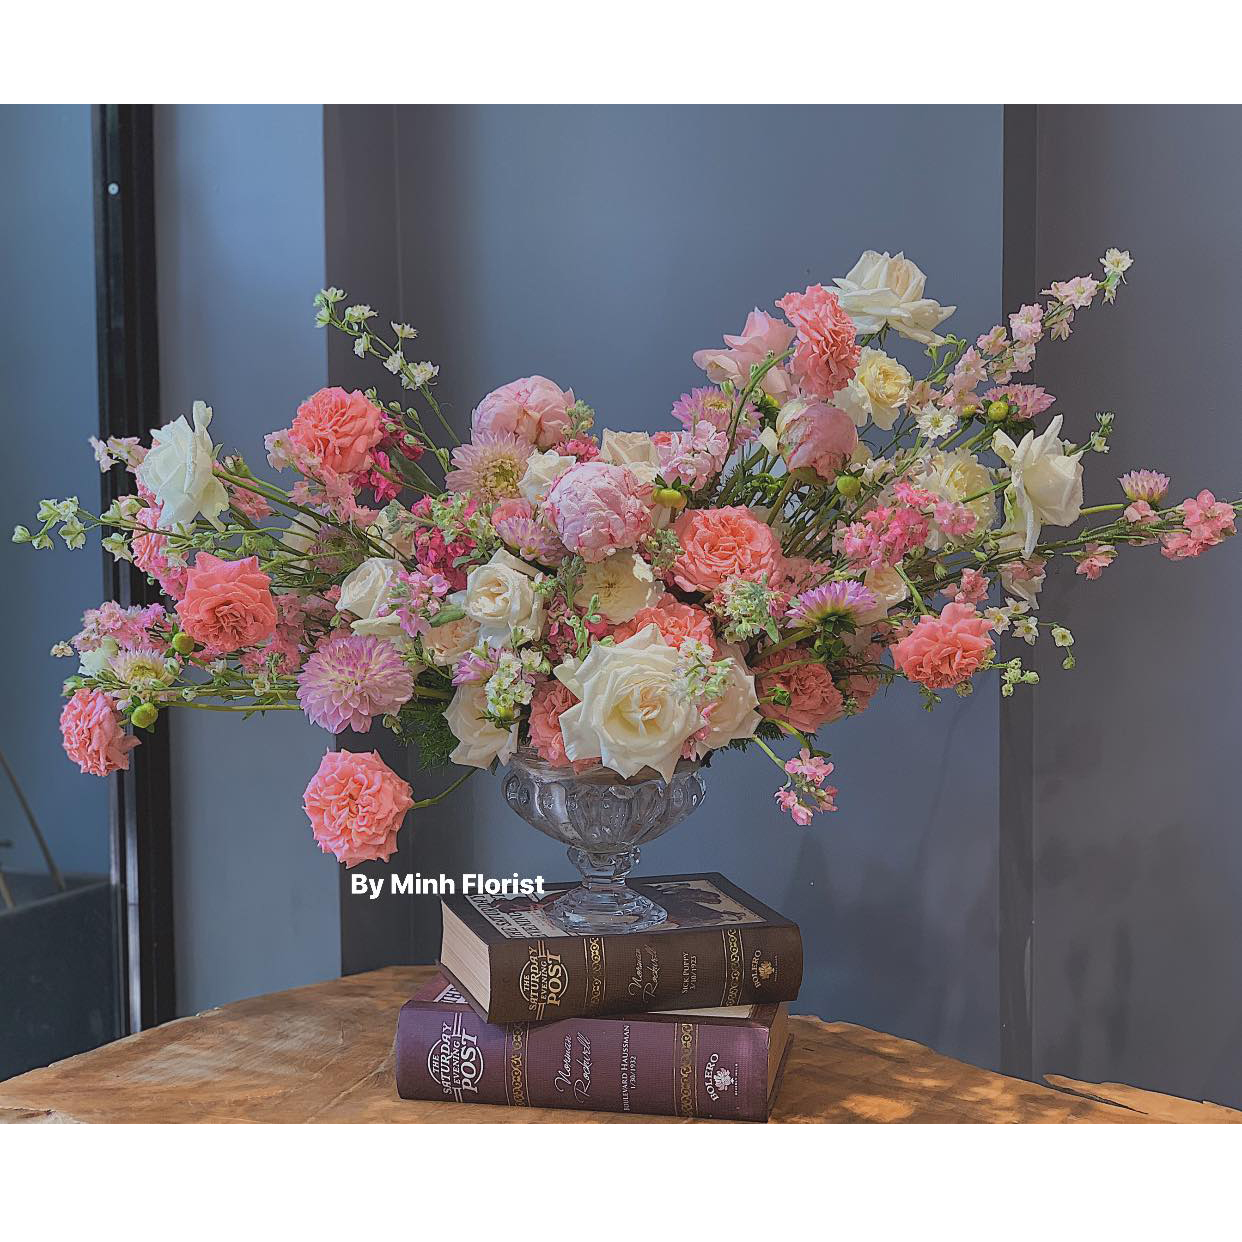 #12 AI LÀ SỐ 1 - Hari Won - Lâm Vỹ Dạ Mê mẩn bộ sưu tập thời trang hoa của nhà thiết kế hoa Nguyễn Phi Minh